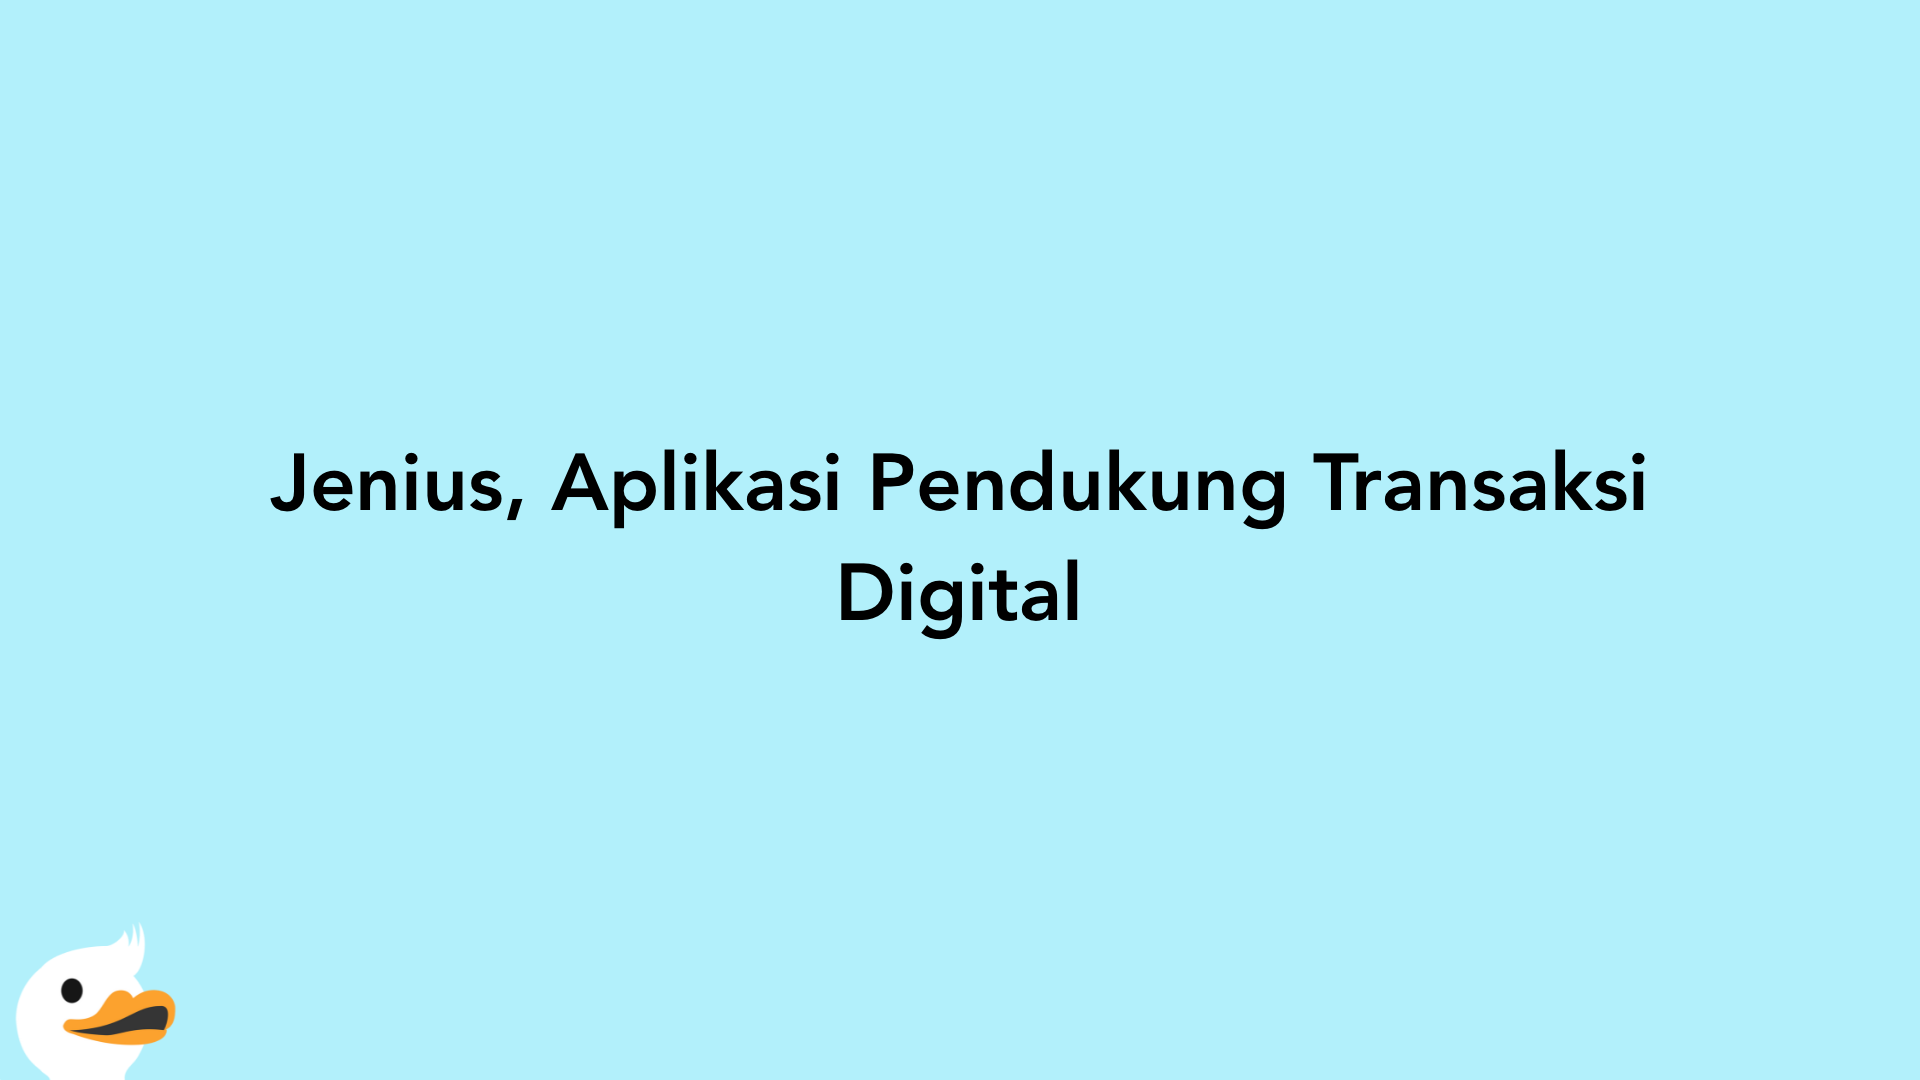 Jenius, Aplikasi Pendukung Transaksi Digital